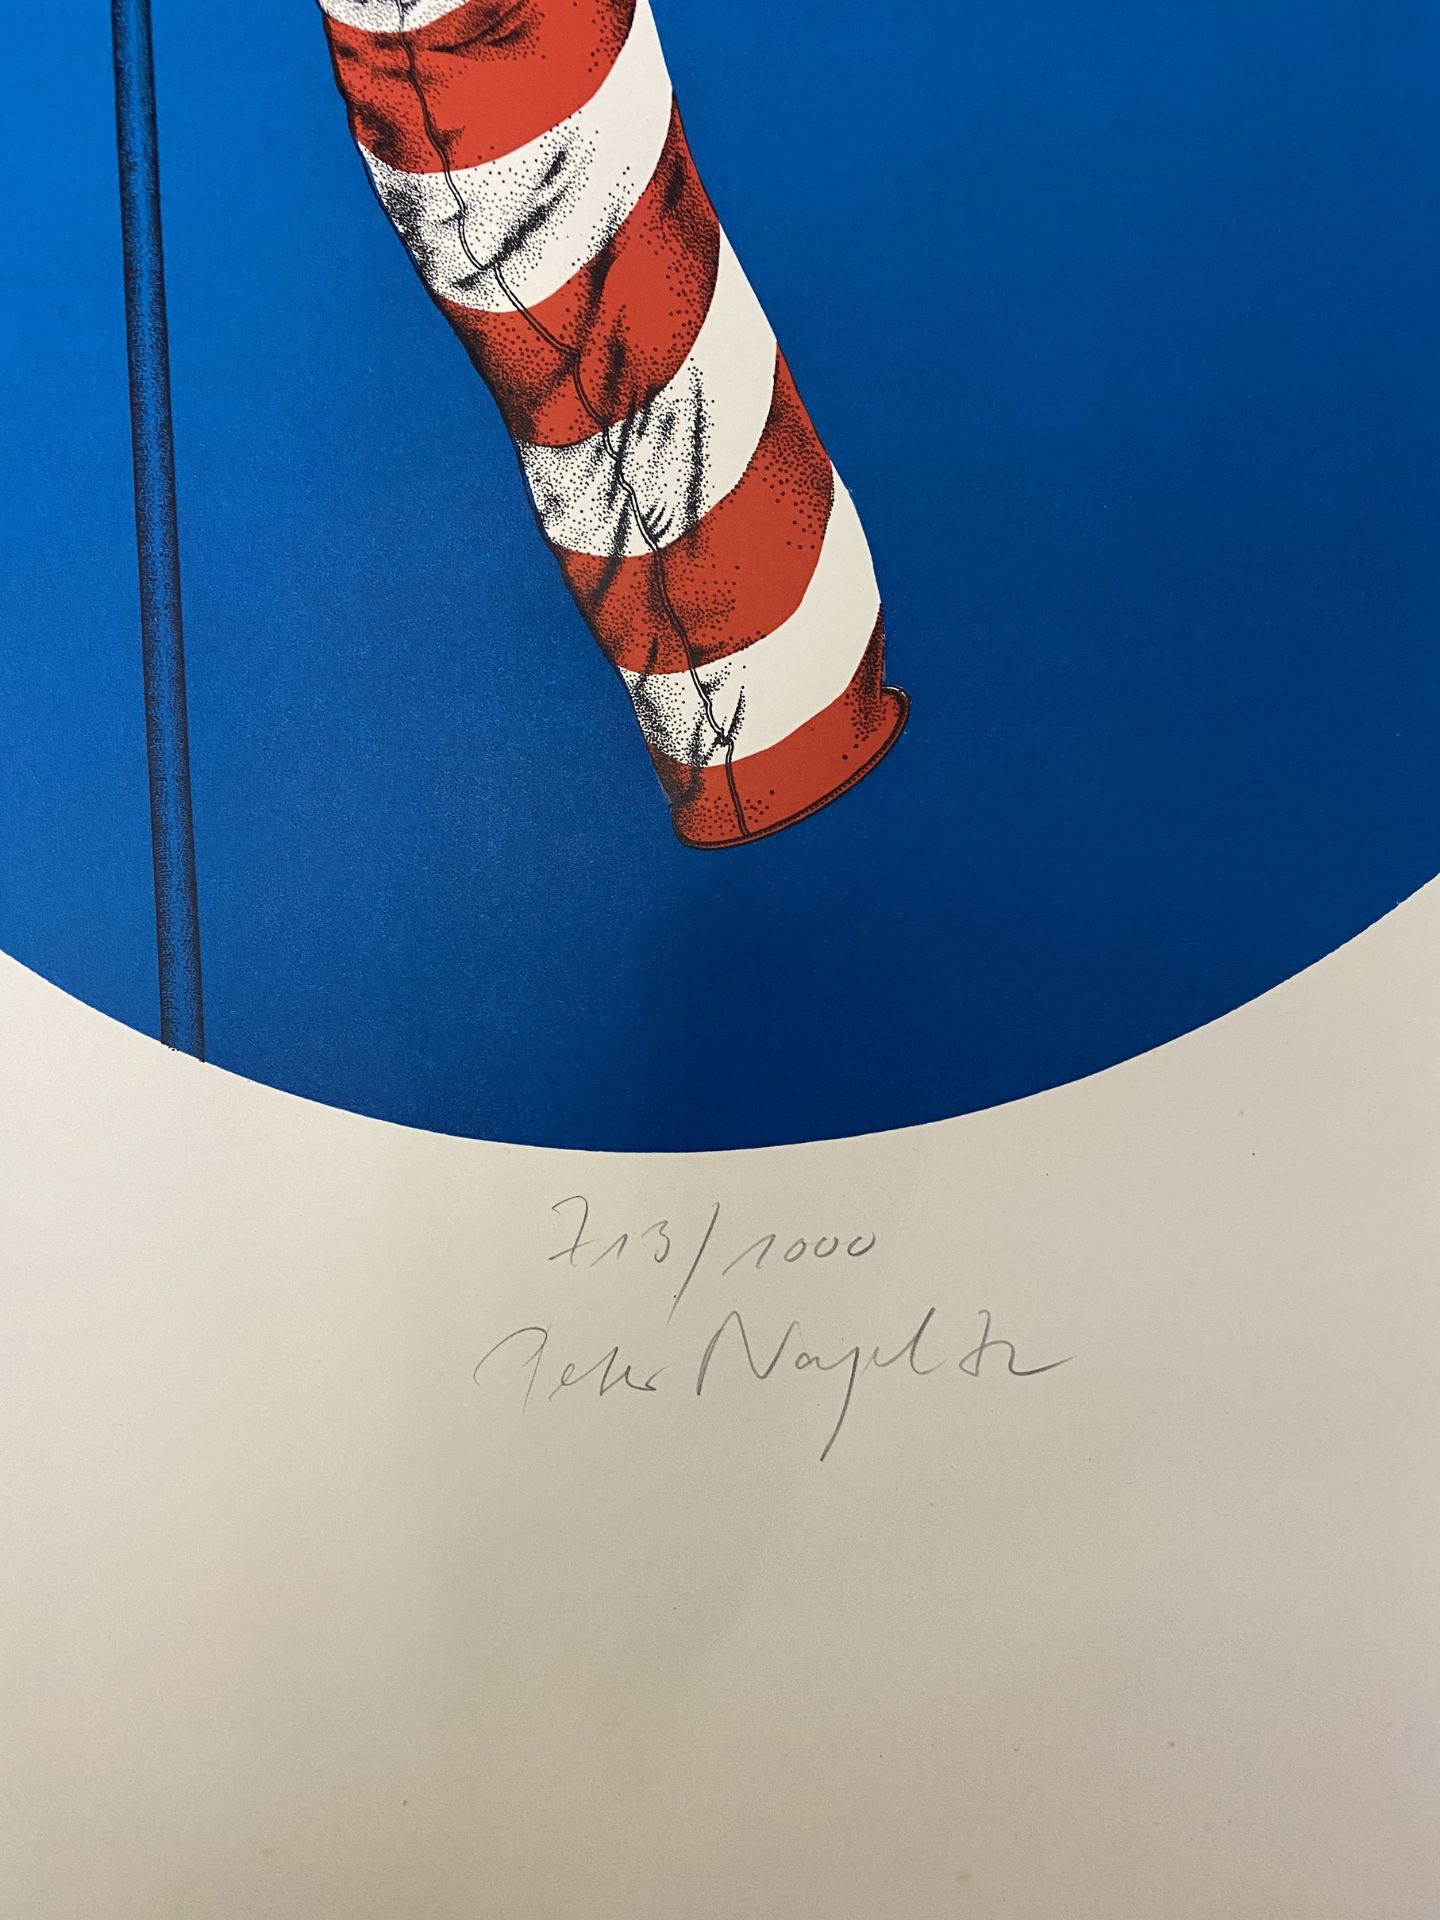 Peter Nagel Farbserigrafie auf Papier "Wind" - Bild 2 aus 2